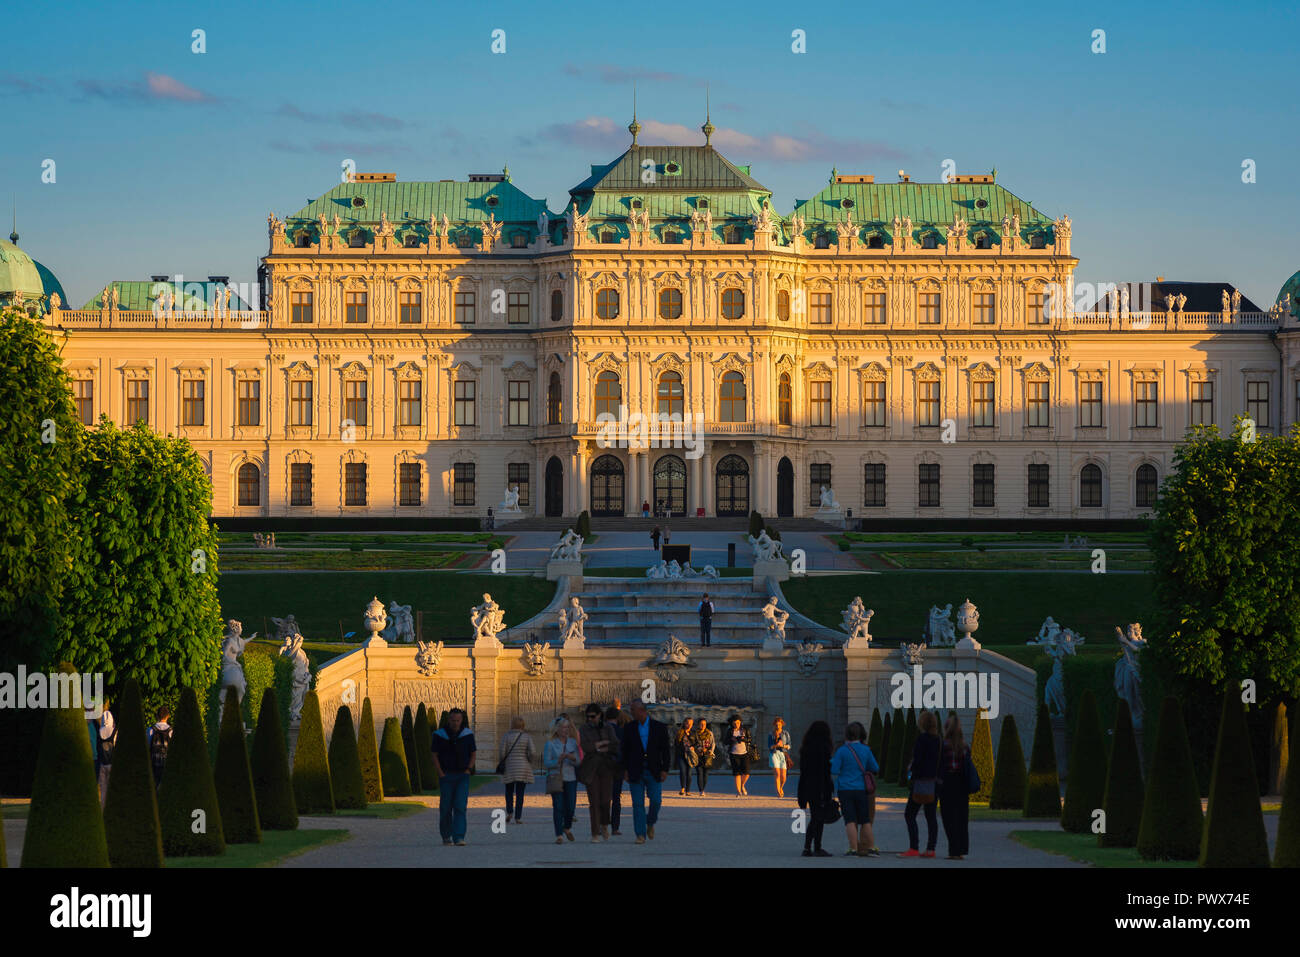 Barockschloss Wien Österreich, Aussicht an einem Sommerabend des Schloss Belvedere in Wien - eines der schönsten Barockschlösser Europas. Stockfoto